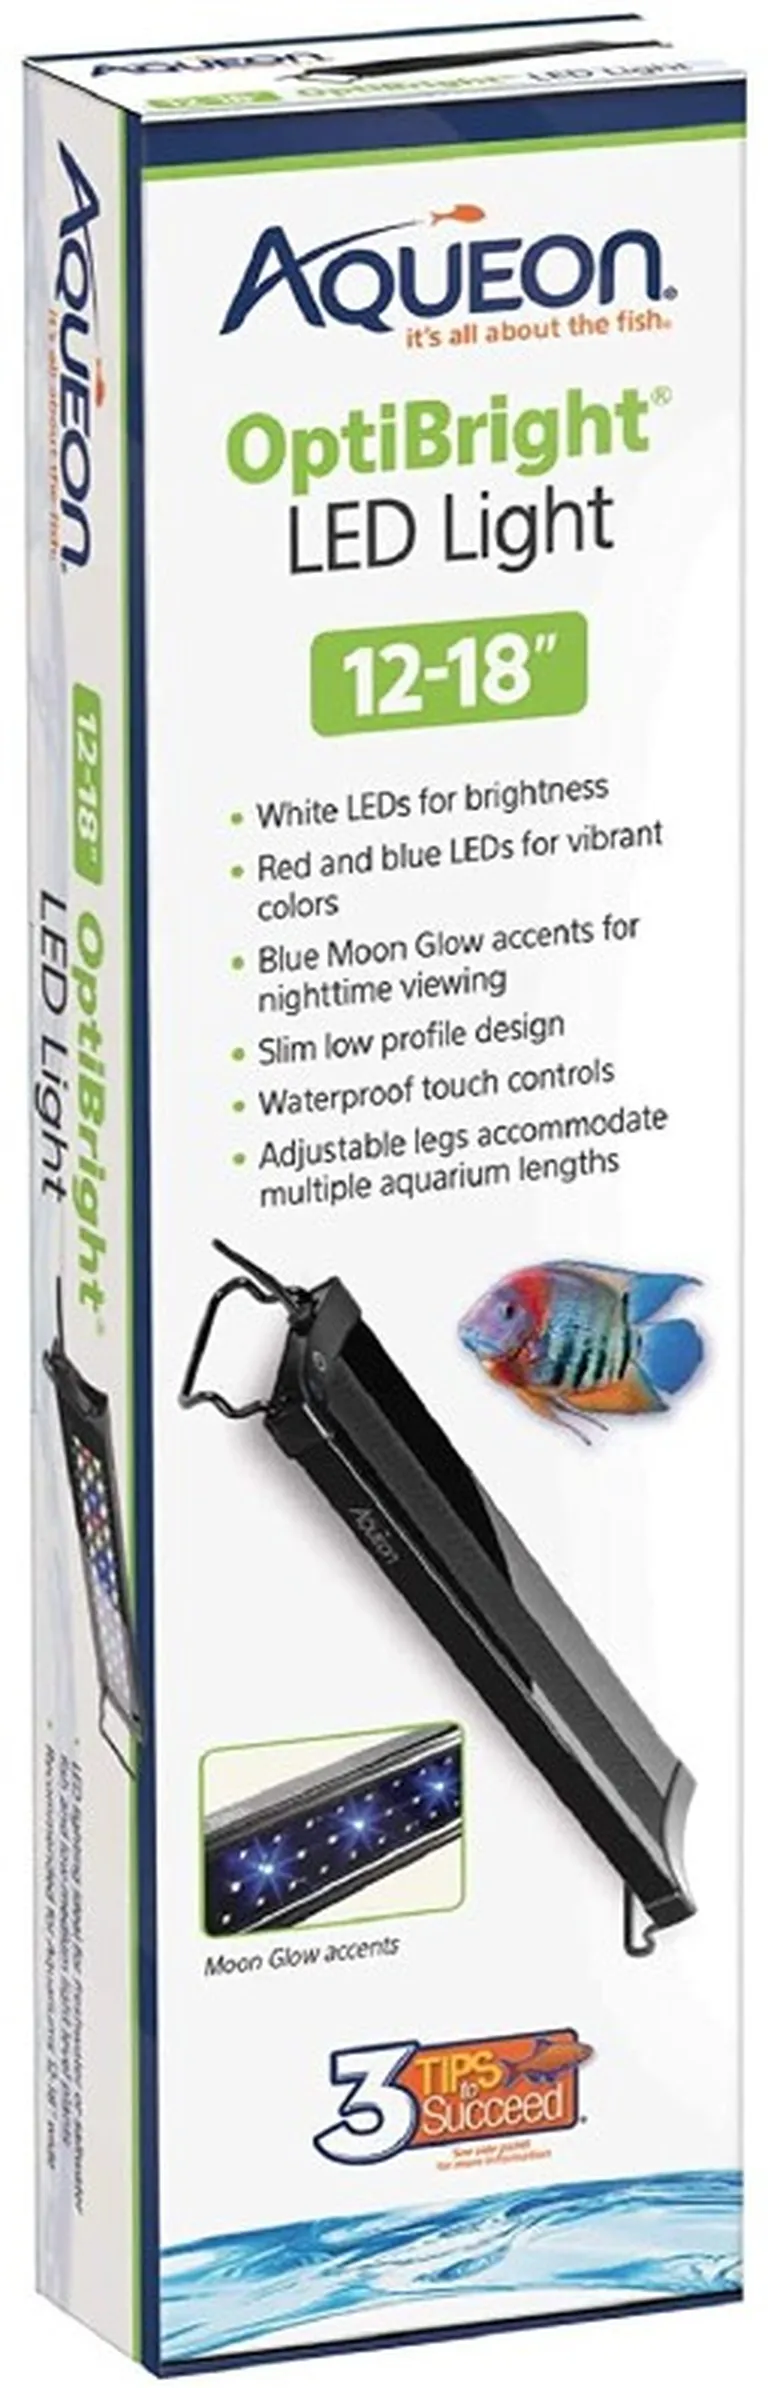 Aqueon OptiBright LED Aquarium Light Fixture Photo 1